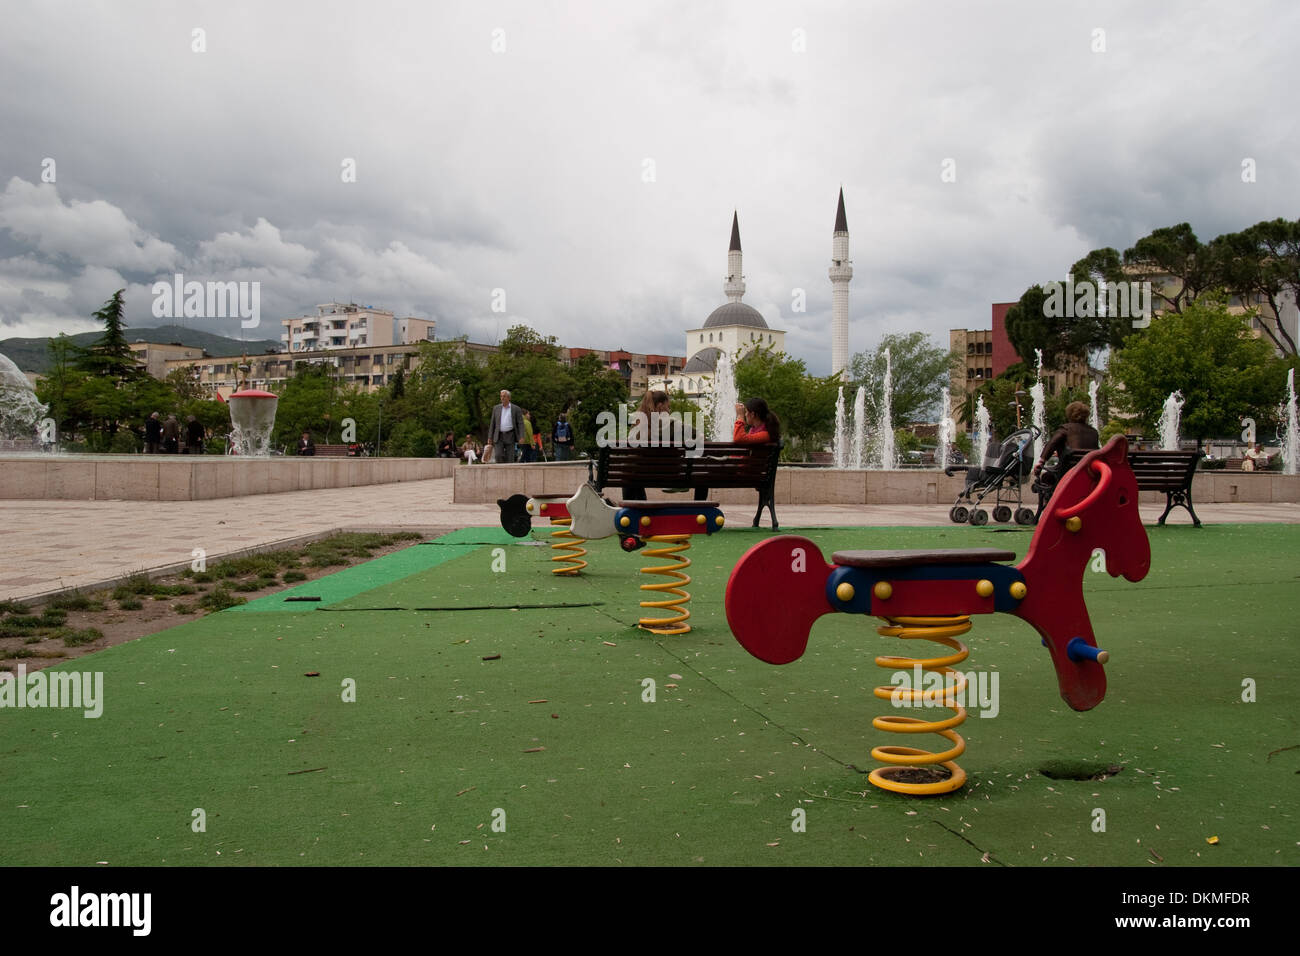 Playground in Shkodra, Albania Stock Photo